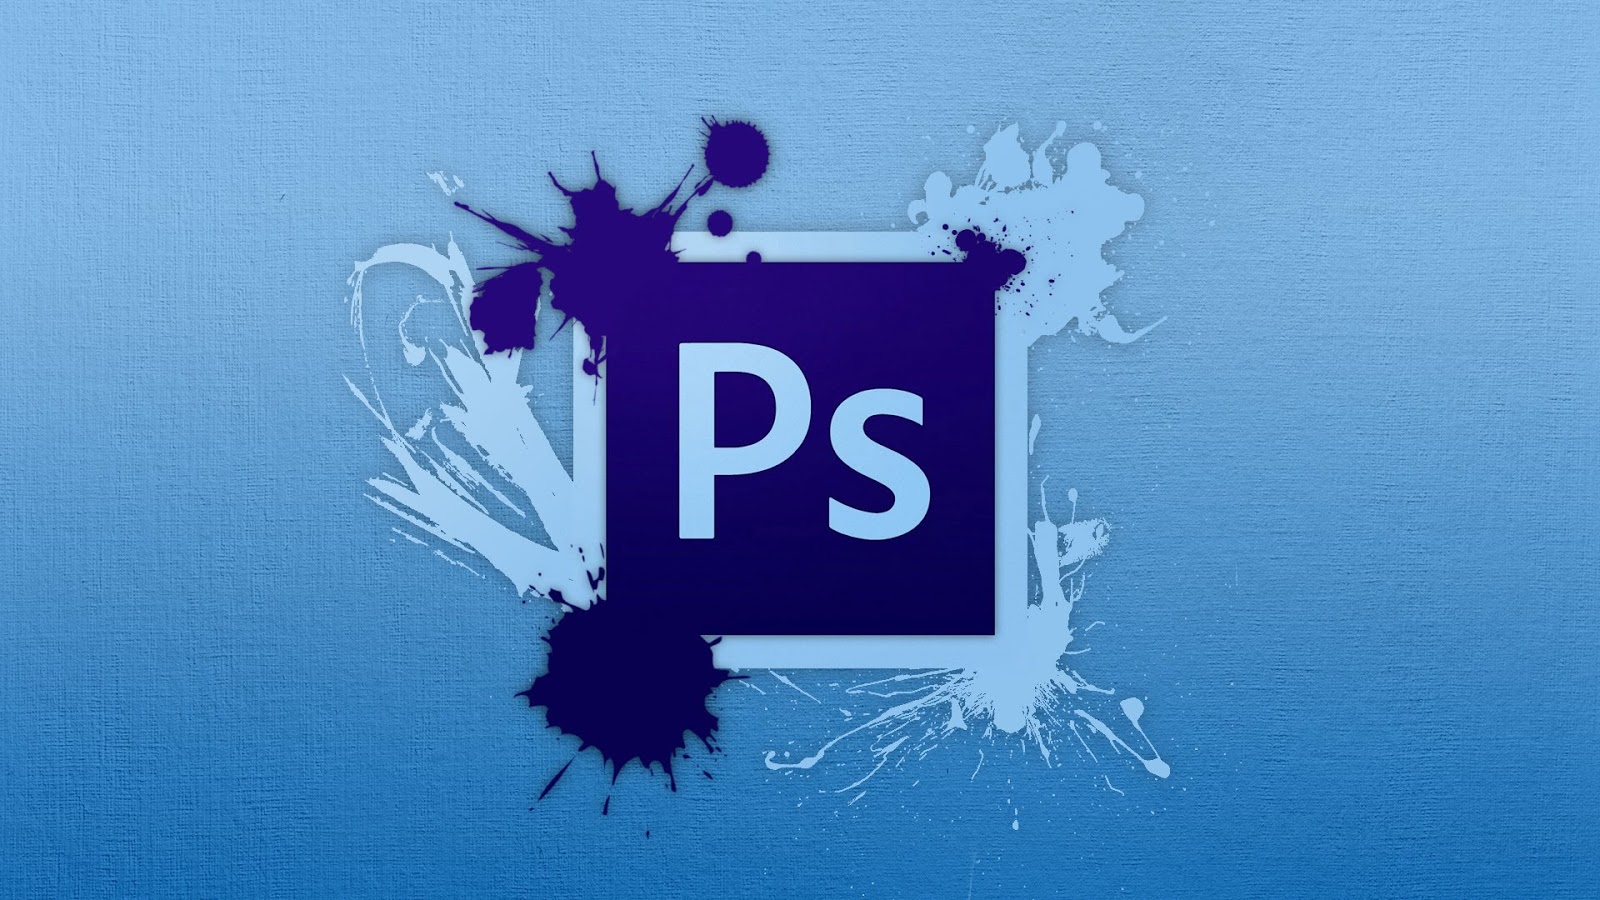 [Download] Photoshop CS6 Portable Full - Ổn định và đầy đủ chức năng